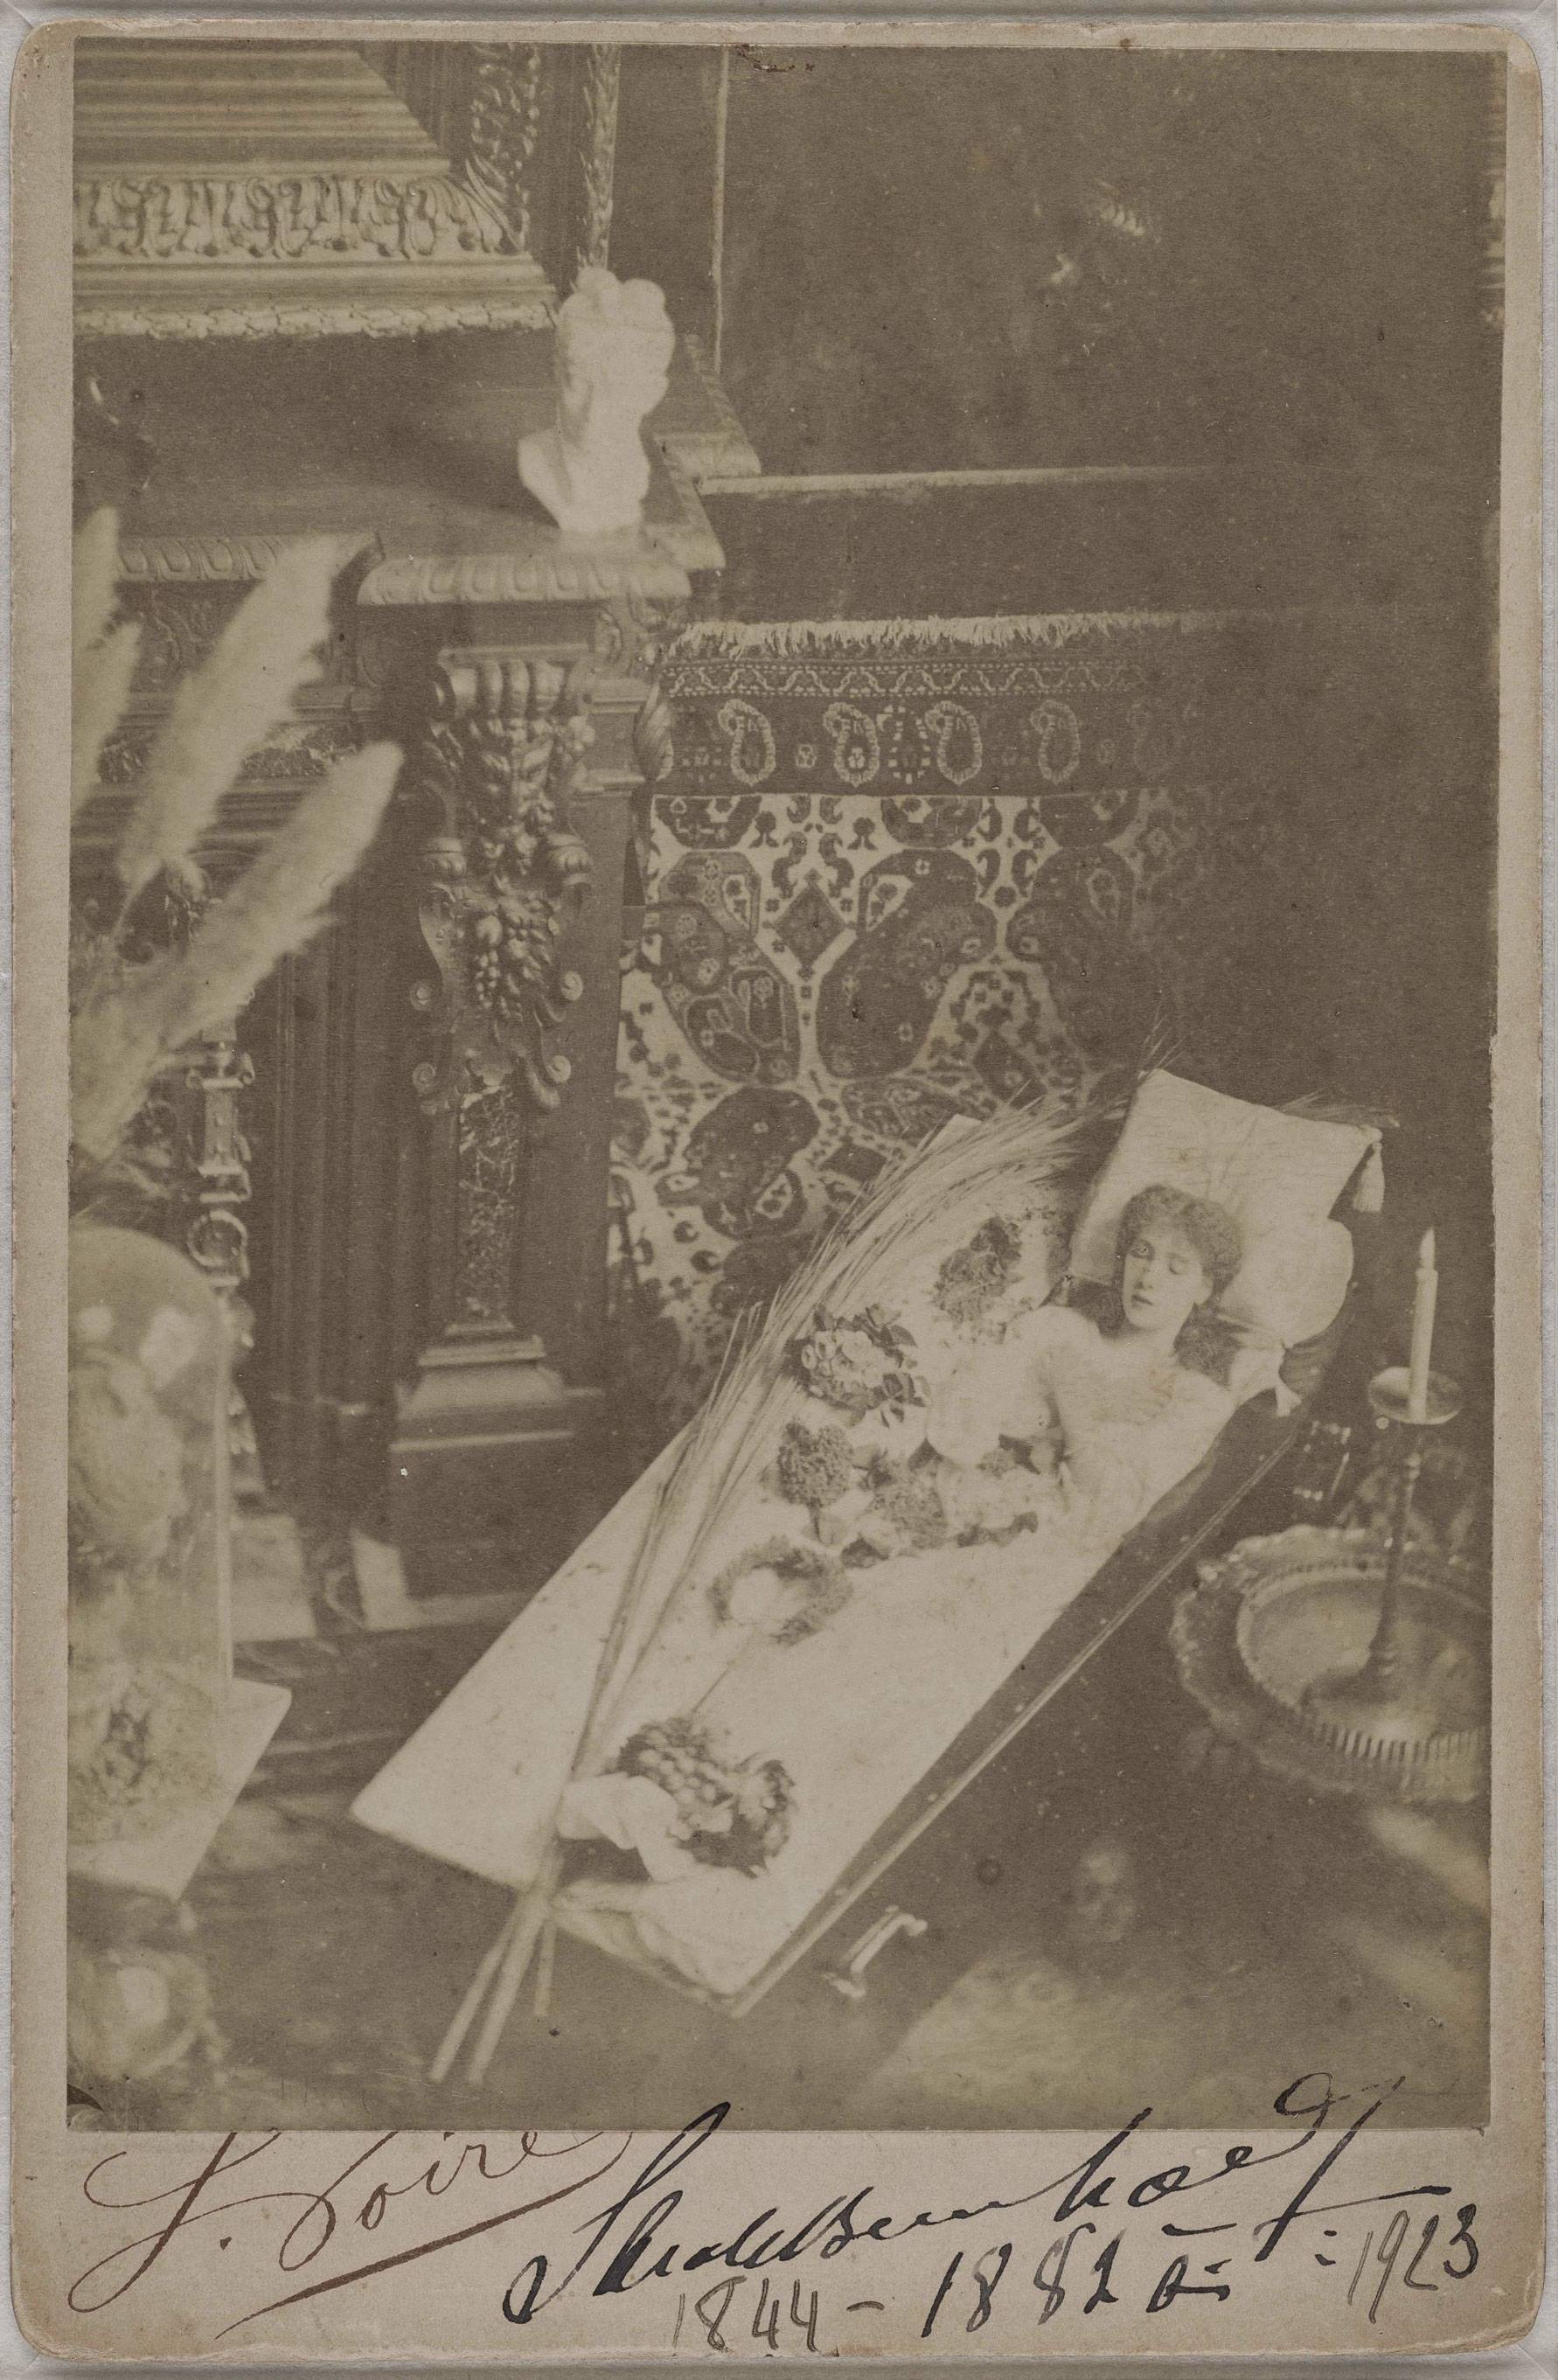 Photographie par Achille Mélandri de Sarah Bernhardt dormant dans son cercueil, vers 1880, Paris © Ville de Paris/Bibliothèque Marguerite Durand